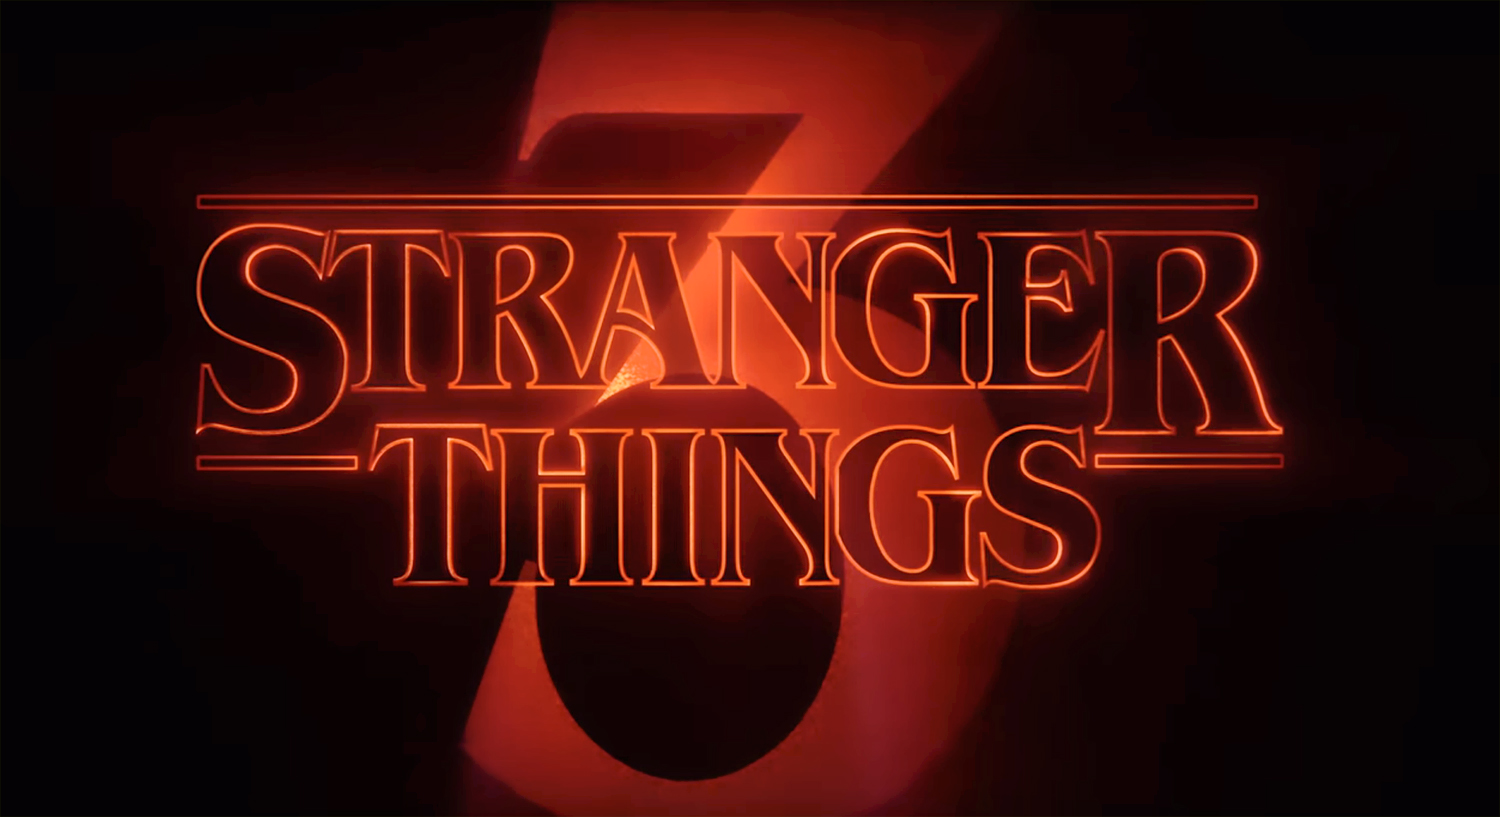 Stranger Things'in 3. sezon yayın tarihi açıklandı